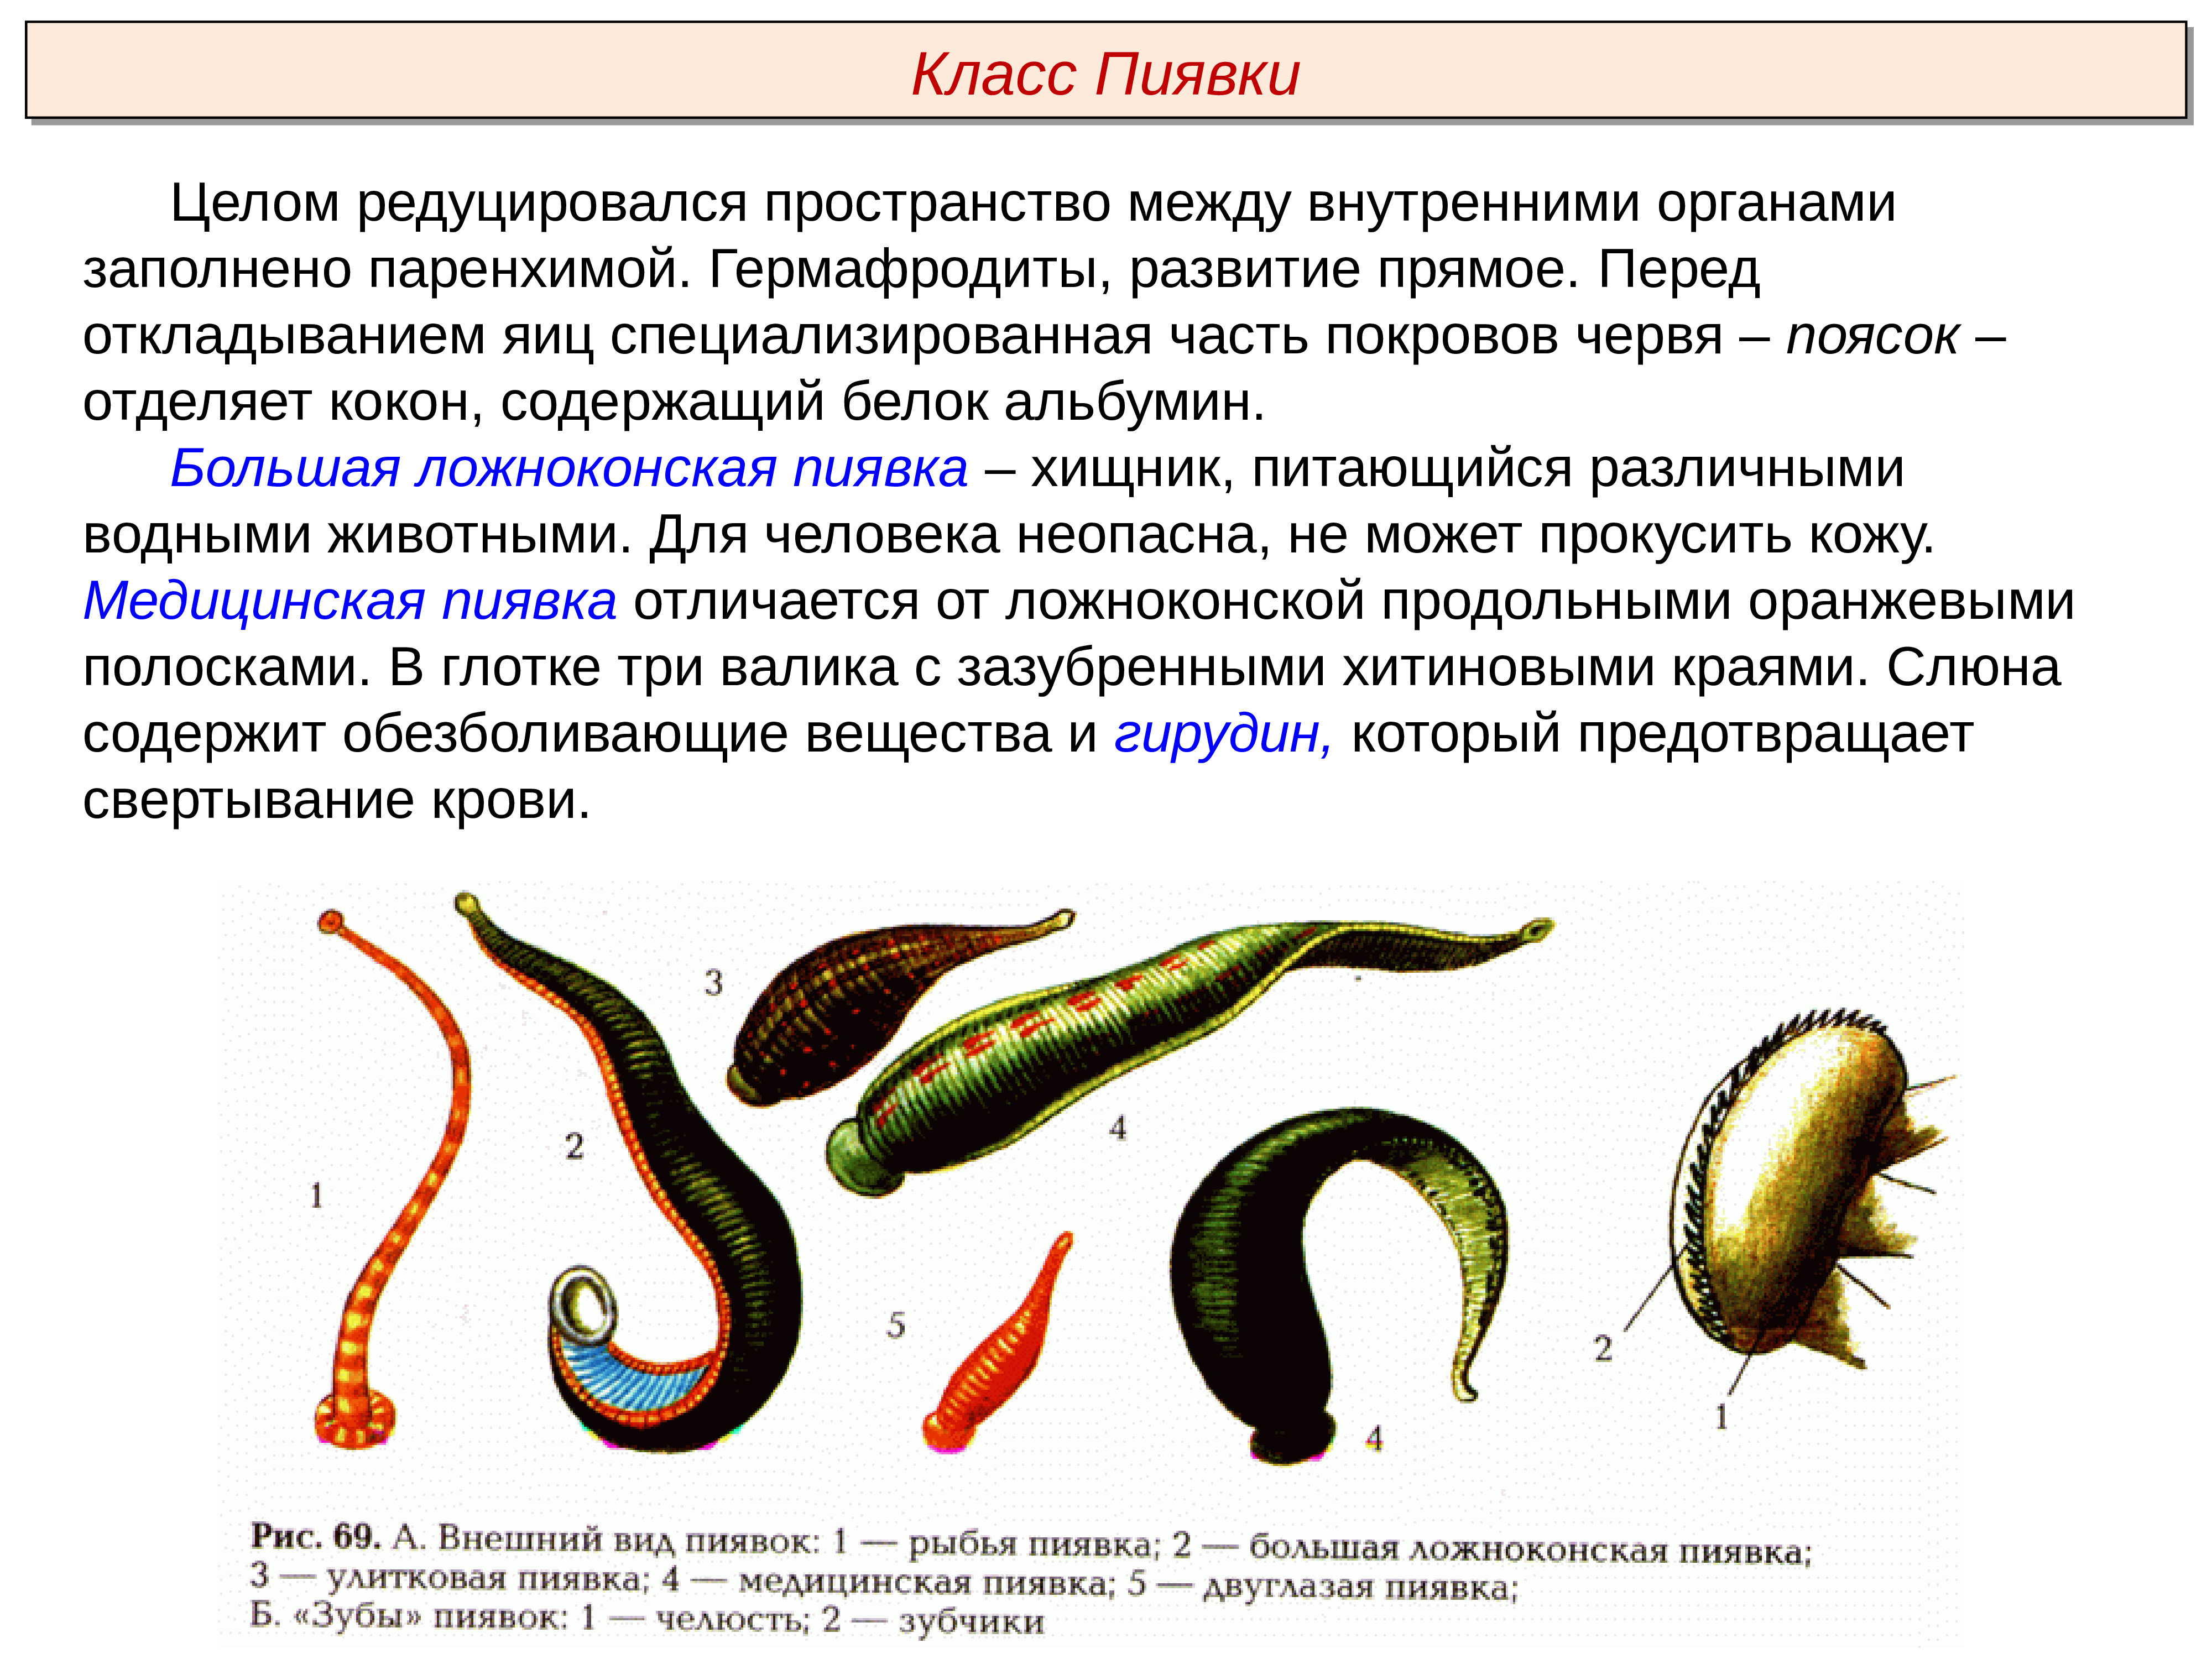 Обоеполые черви. Тип кольчатые черви Annelida. Кольчатые черви гермафродиты. Большая Ложноконская пиявка.